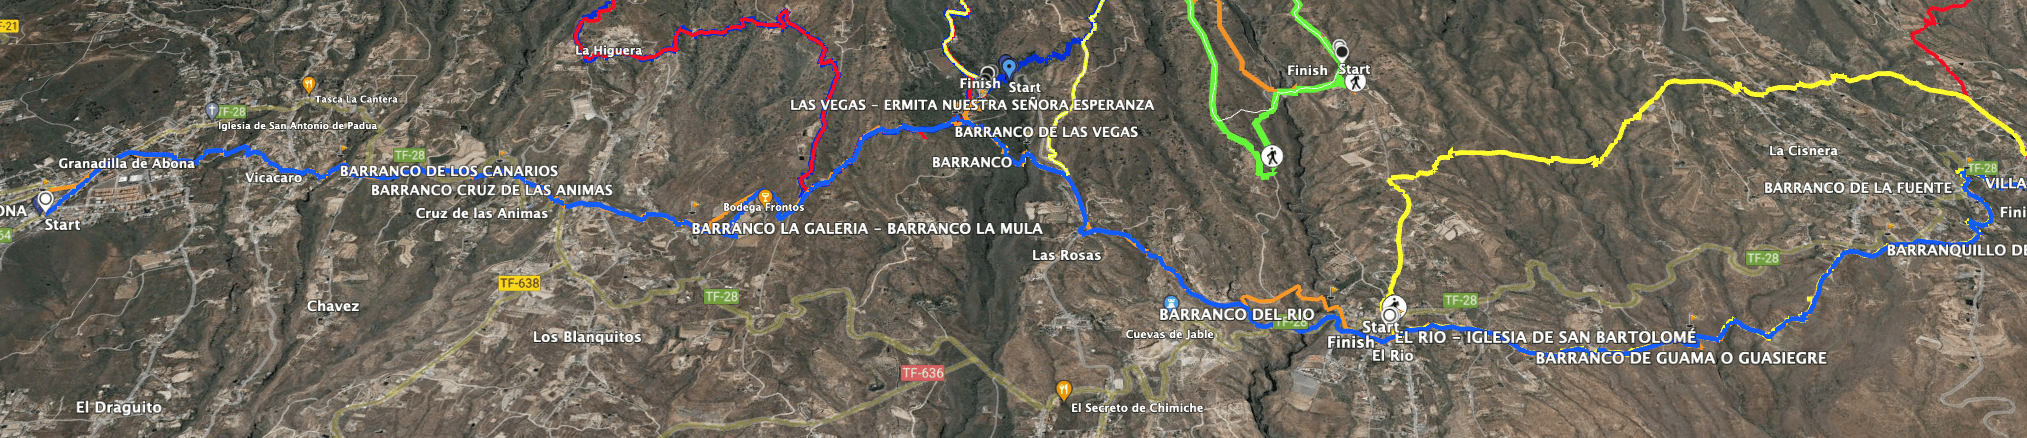 Track of the hike Camino Real del Sur Granadilla de Abona to Villa de Arico